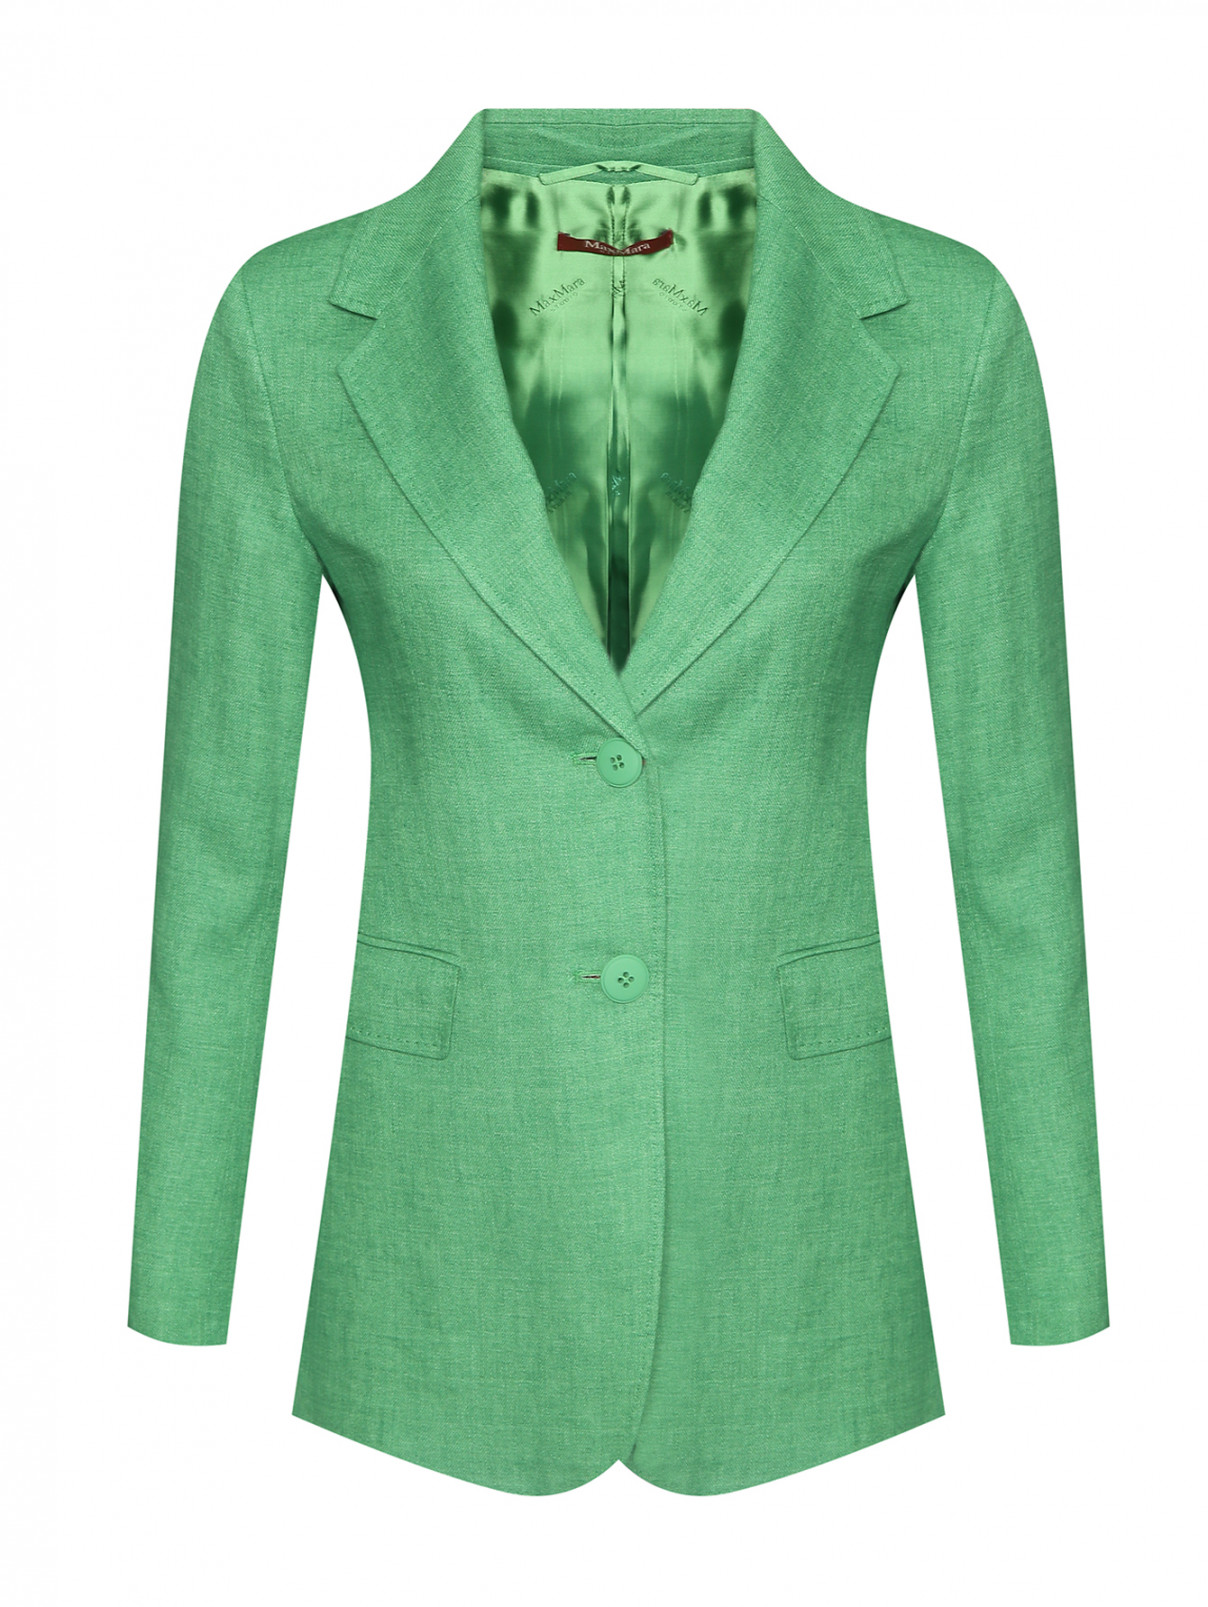 Жакет из льна с карманами Max Mara  –  Общий вид  – Цвет:  Зеленый